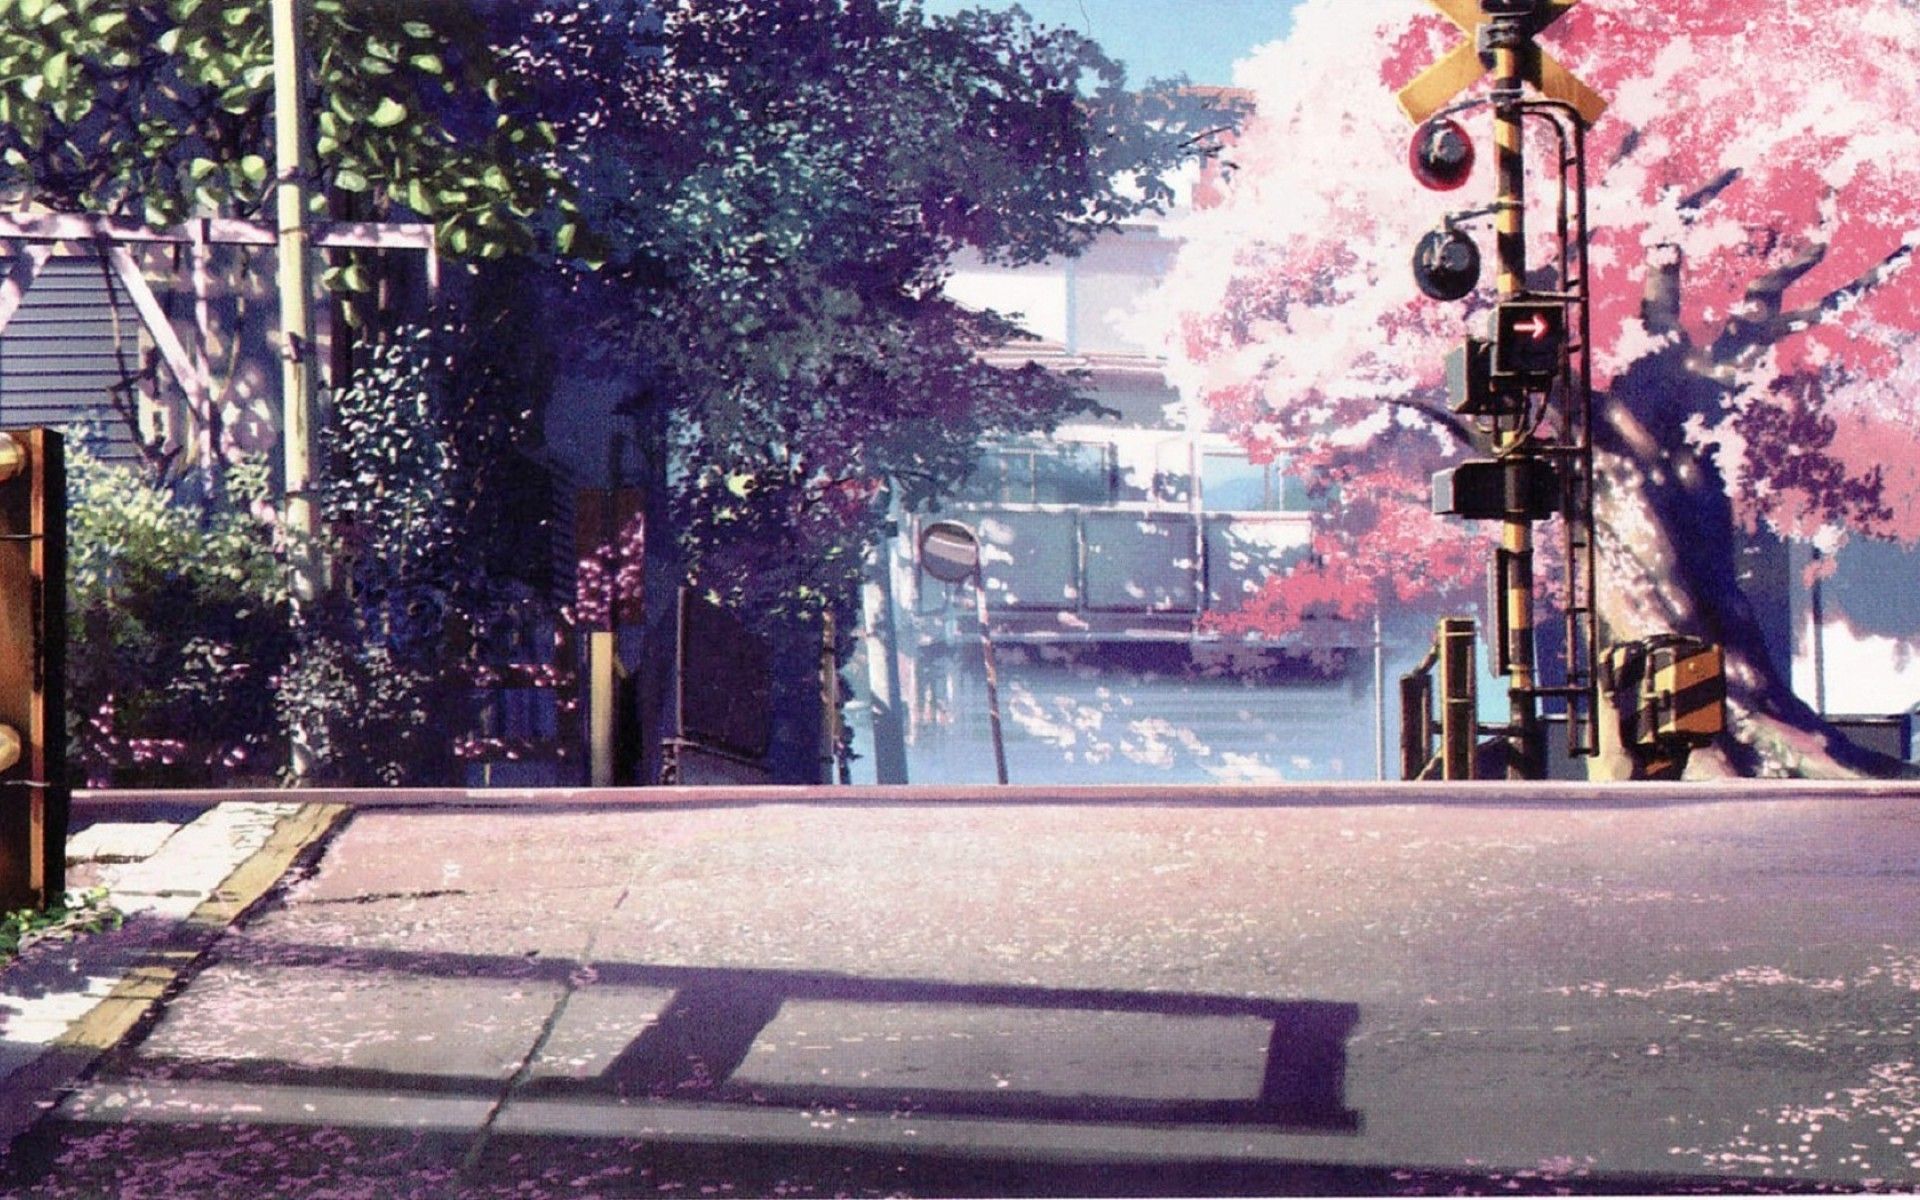 Đường phố anime đầy màu sắc và huyền bí này sẽ khiến bạn phải choáng ngợp với những nhân vật đường phố đặc trưng trong truyện tranh. Hãy tới và khám phá thế giới của họ với những tác phẩm nghệ thuật độc đáo và đầy màu sắc.